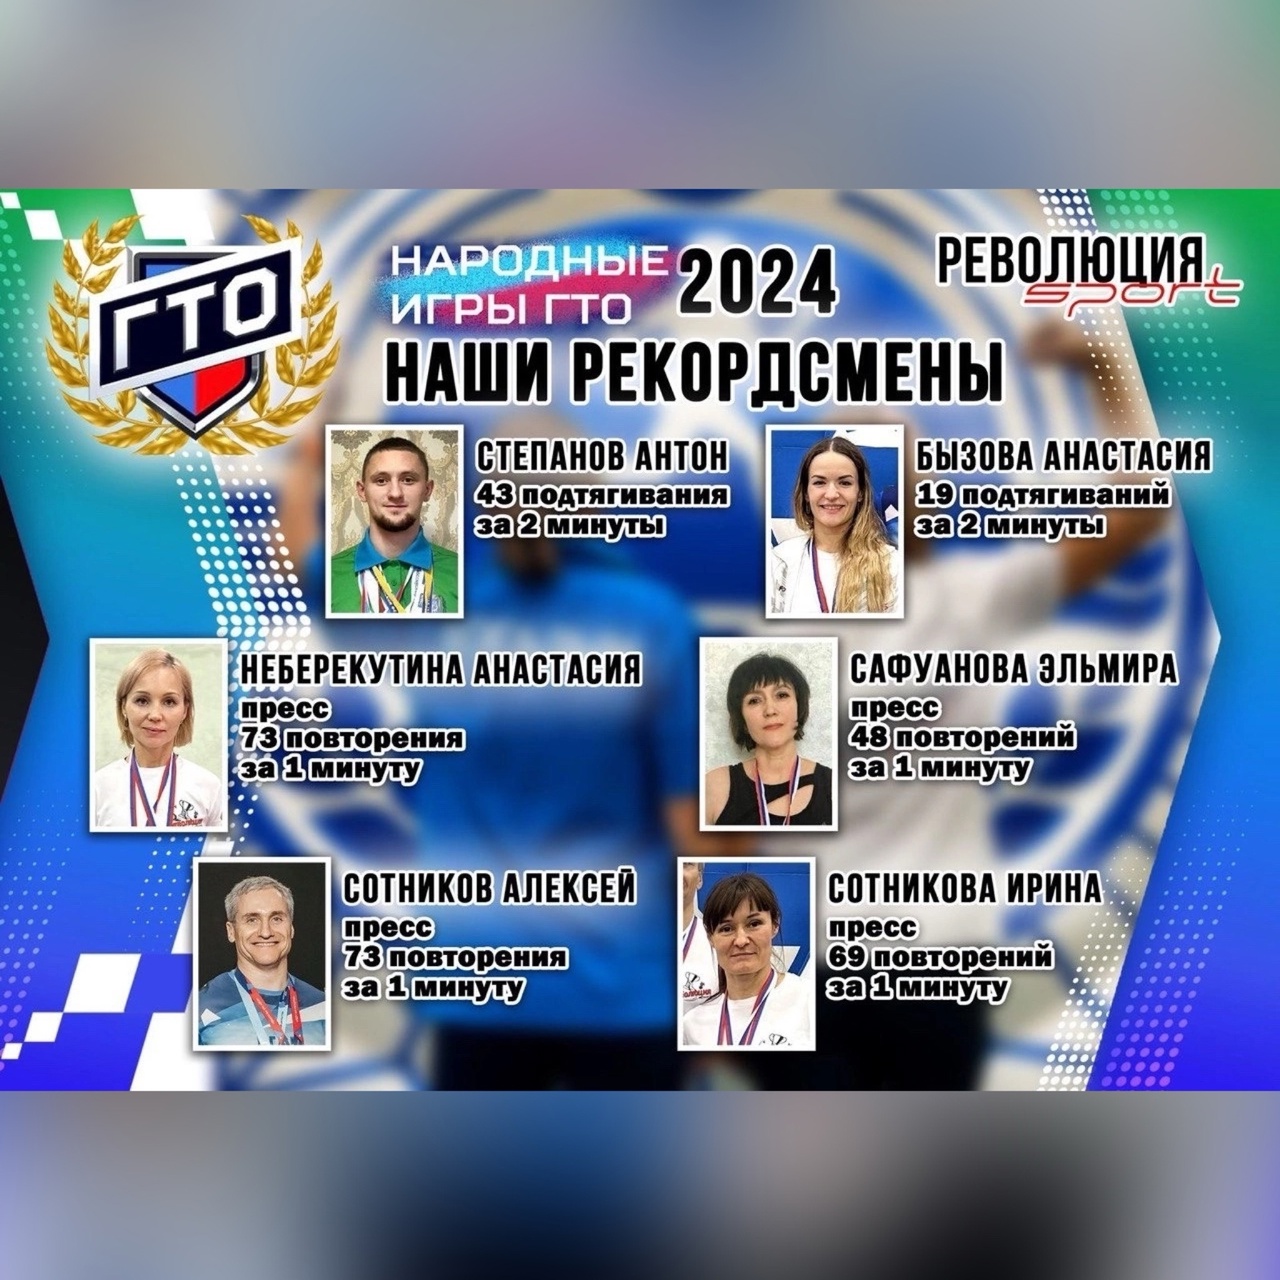 Рекордсмены первых Всероссийских Народных Игр ГТО 2024 года!